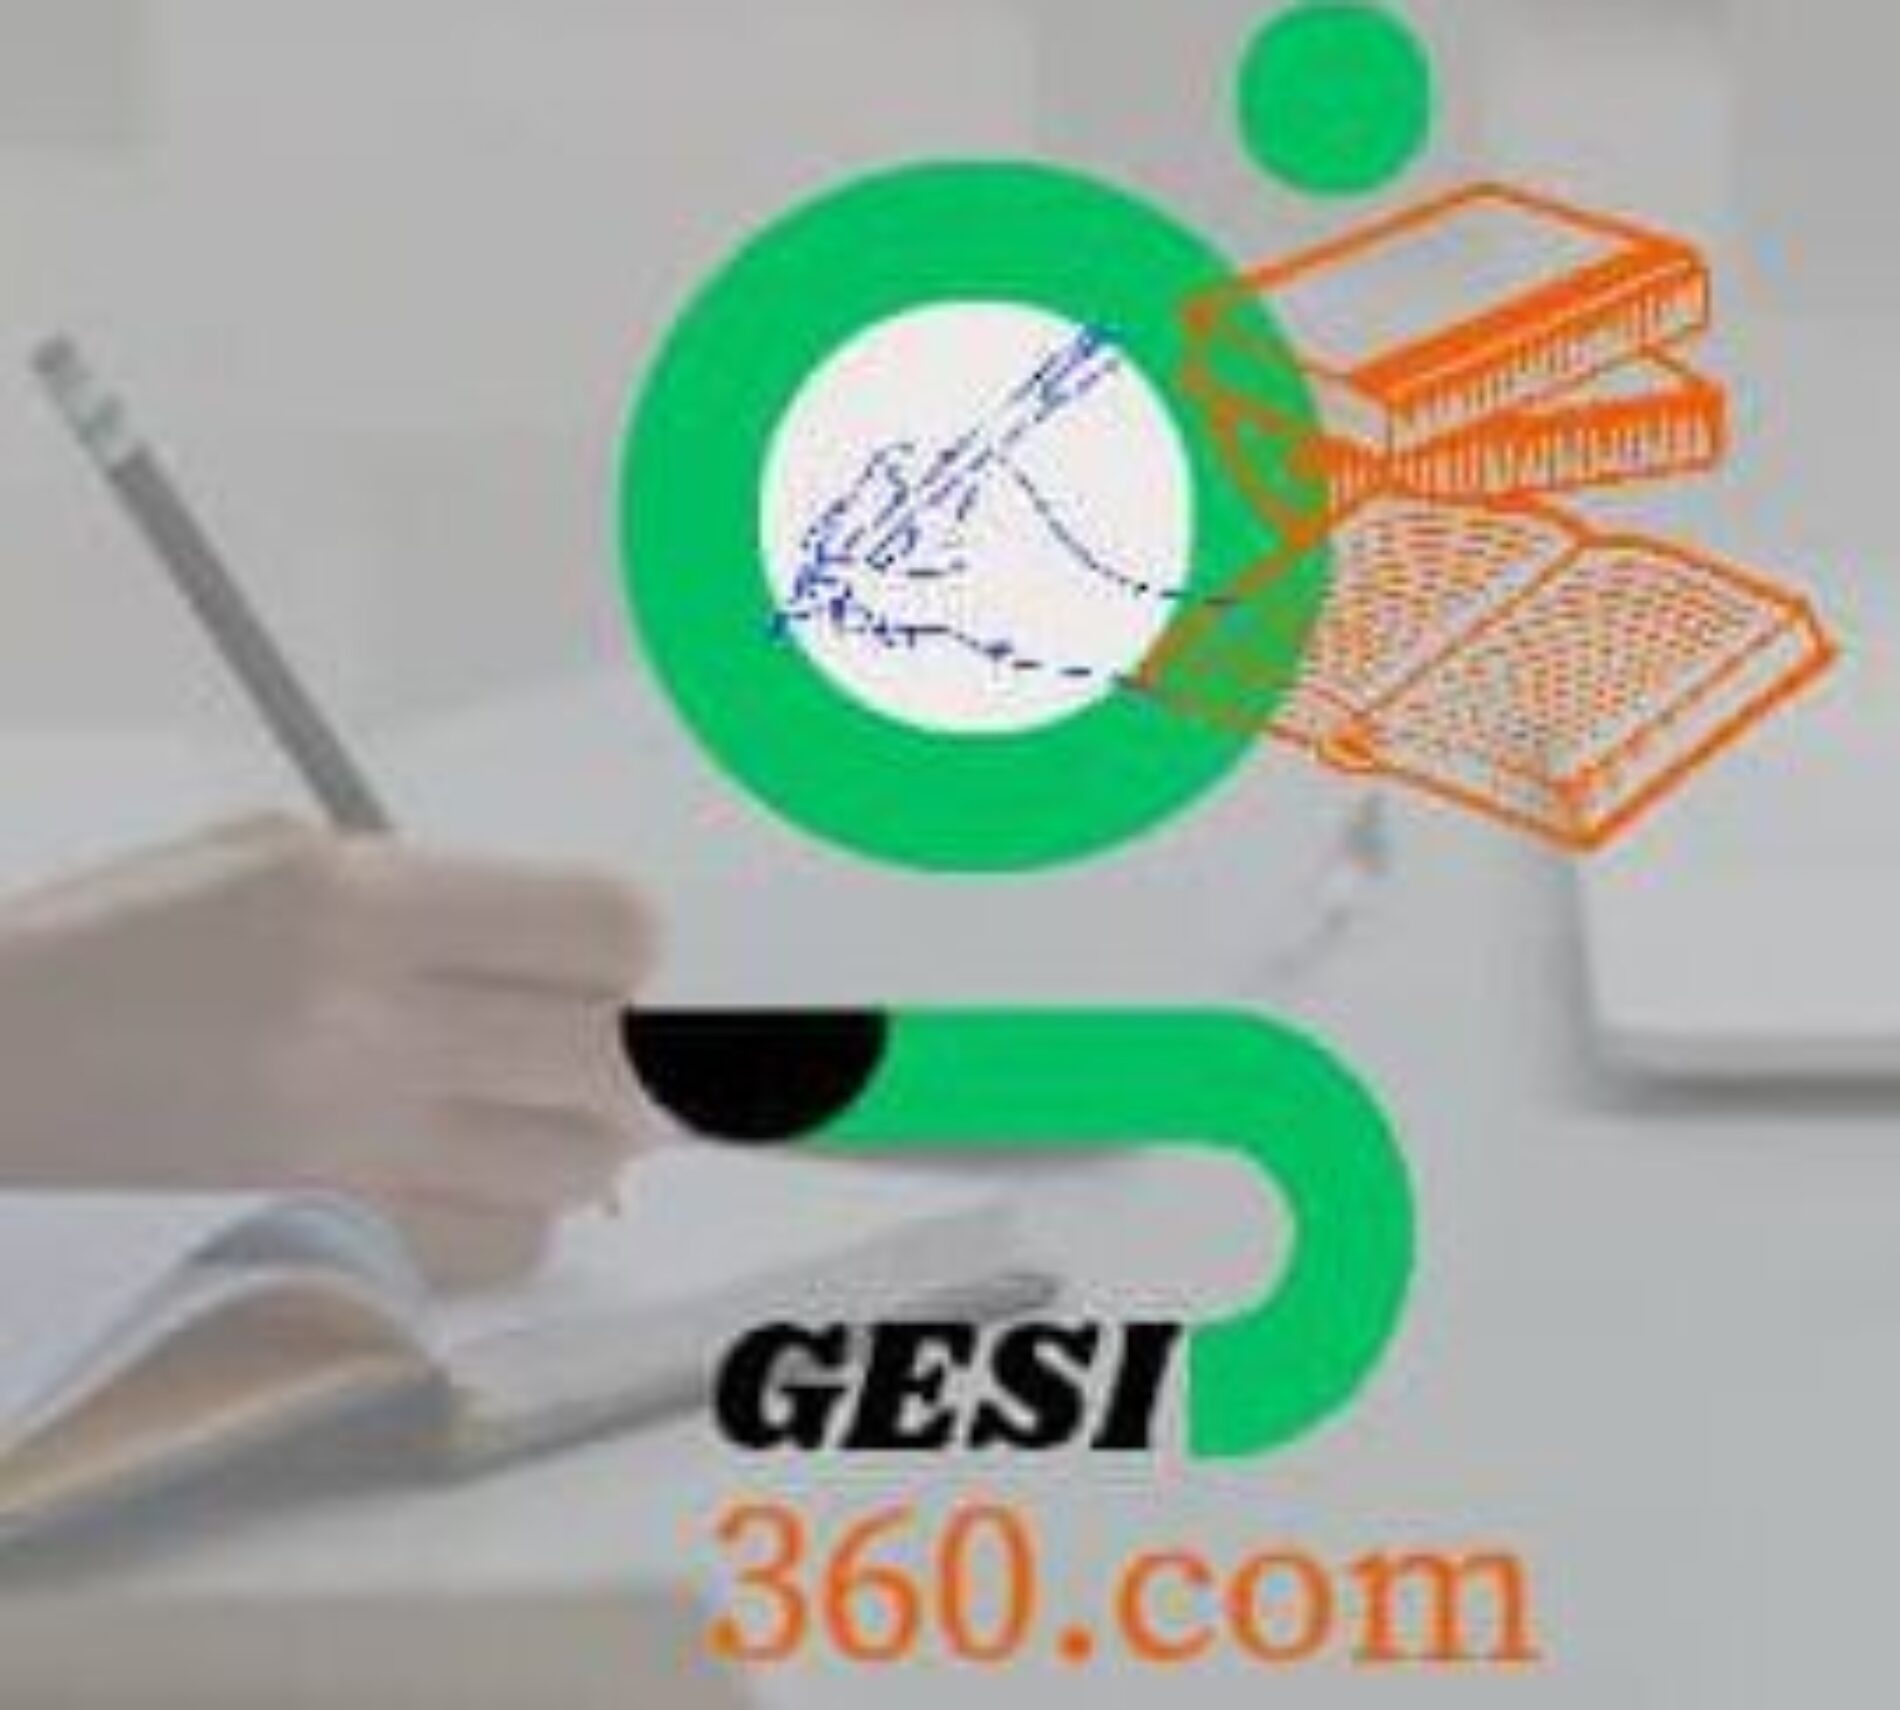 GESI360.com